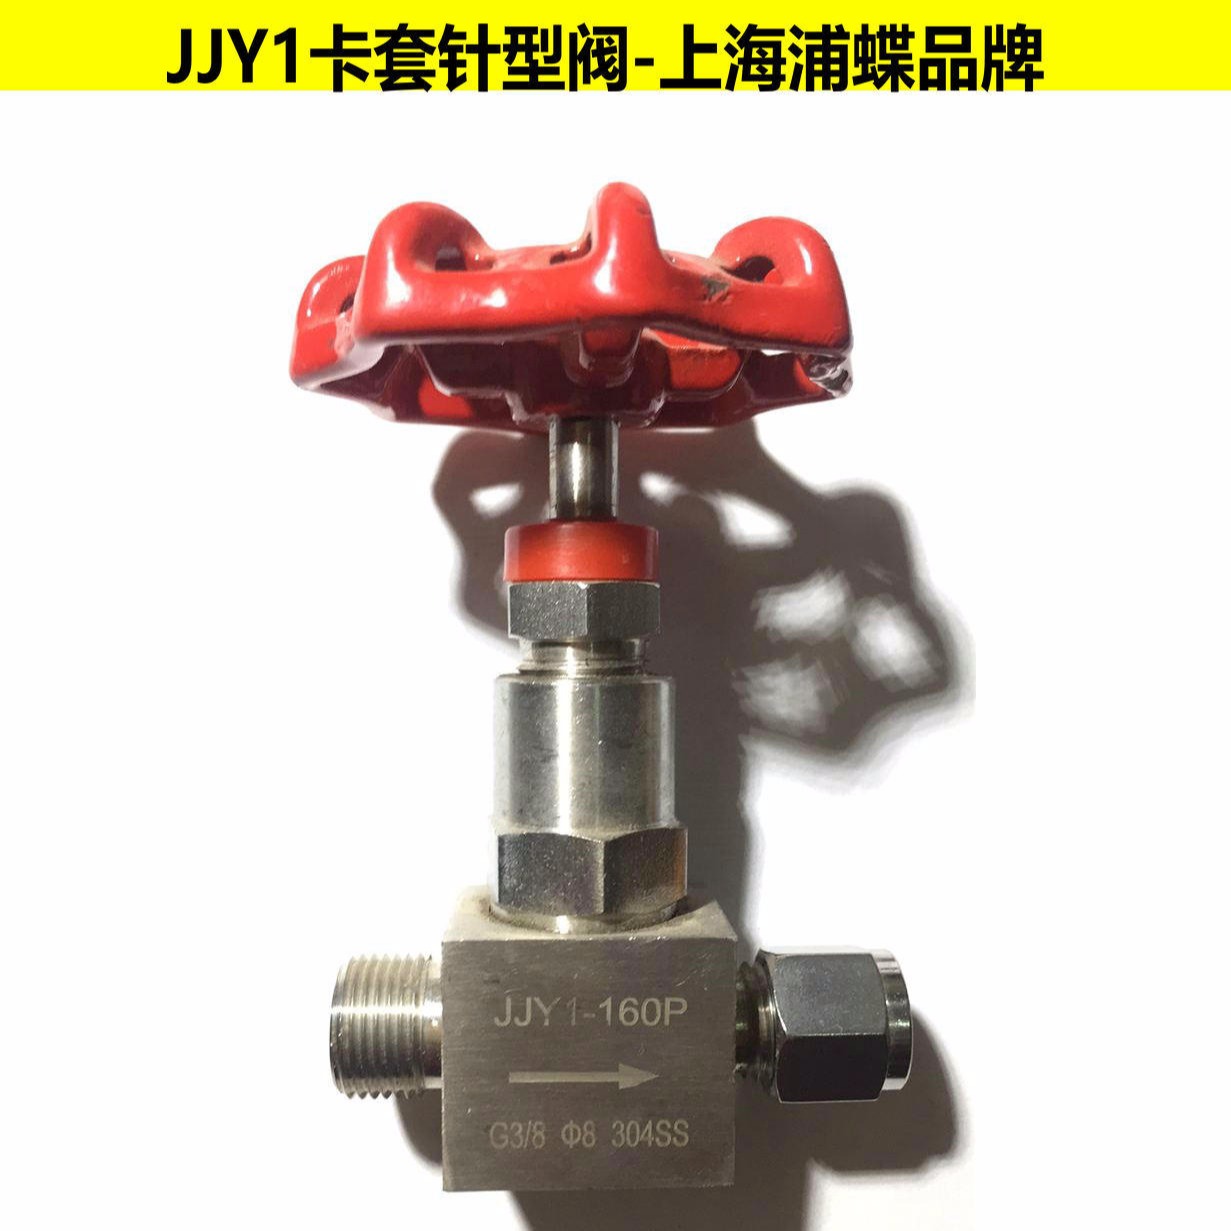 卡套针型阀JJY1 上海浦蝶品牌图片